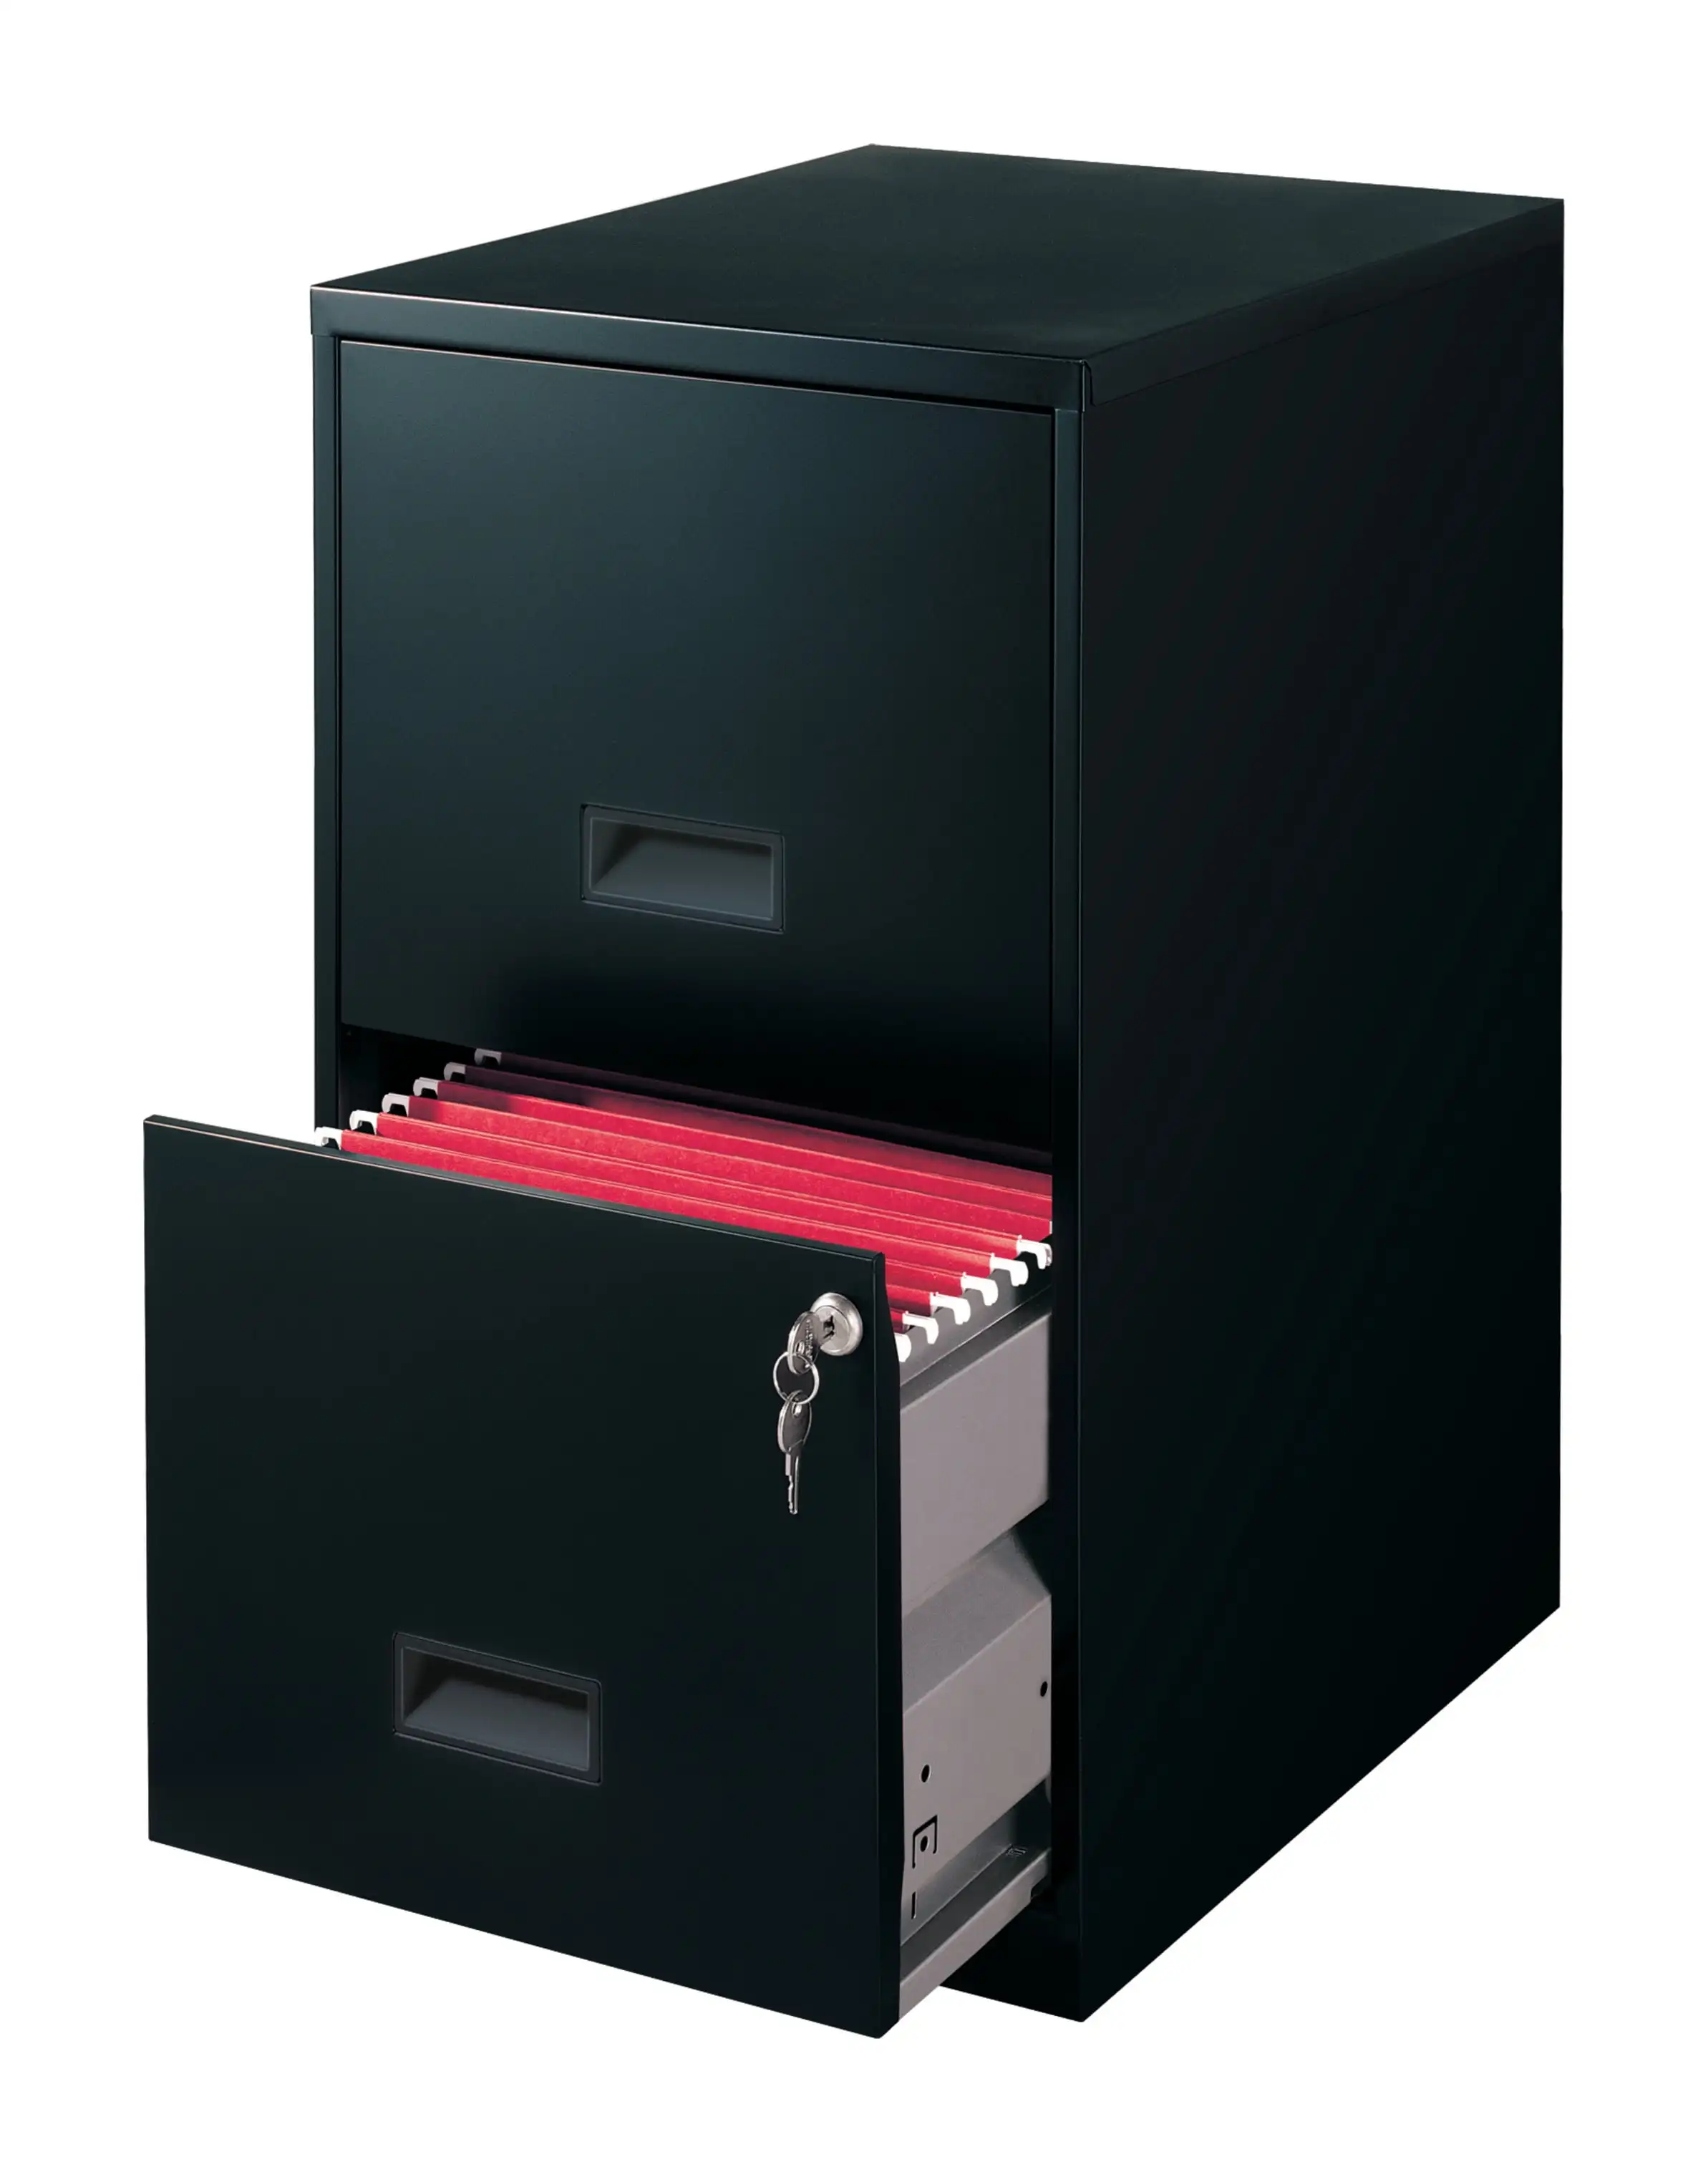 

Вертикальный шкаф для файлов с двумя выдвижными ящиками и шириной 18 дюймов